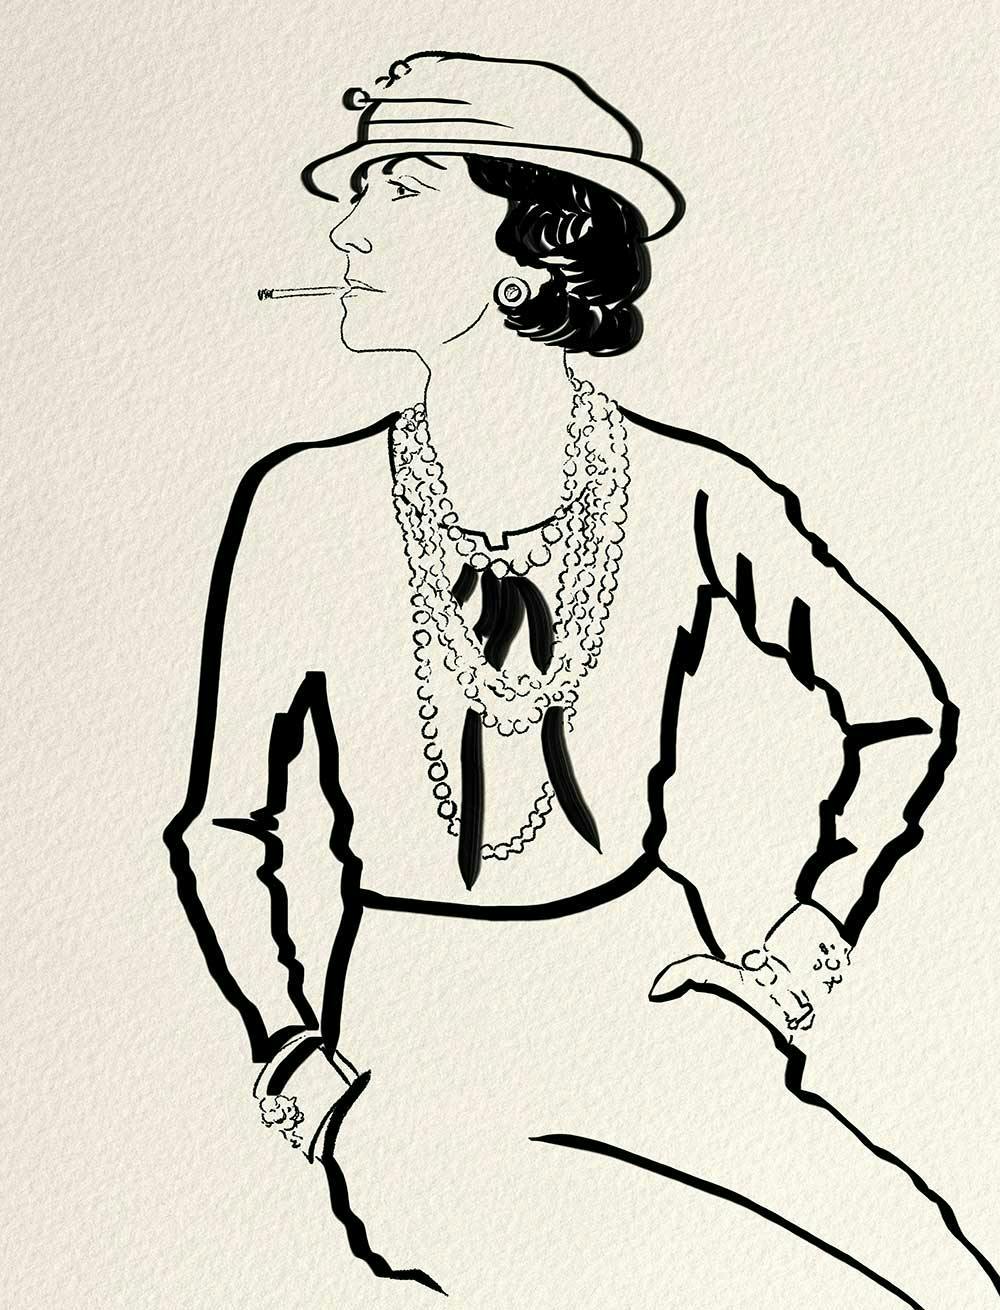 Coco Chanel leo zodiac sign